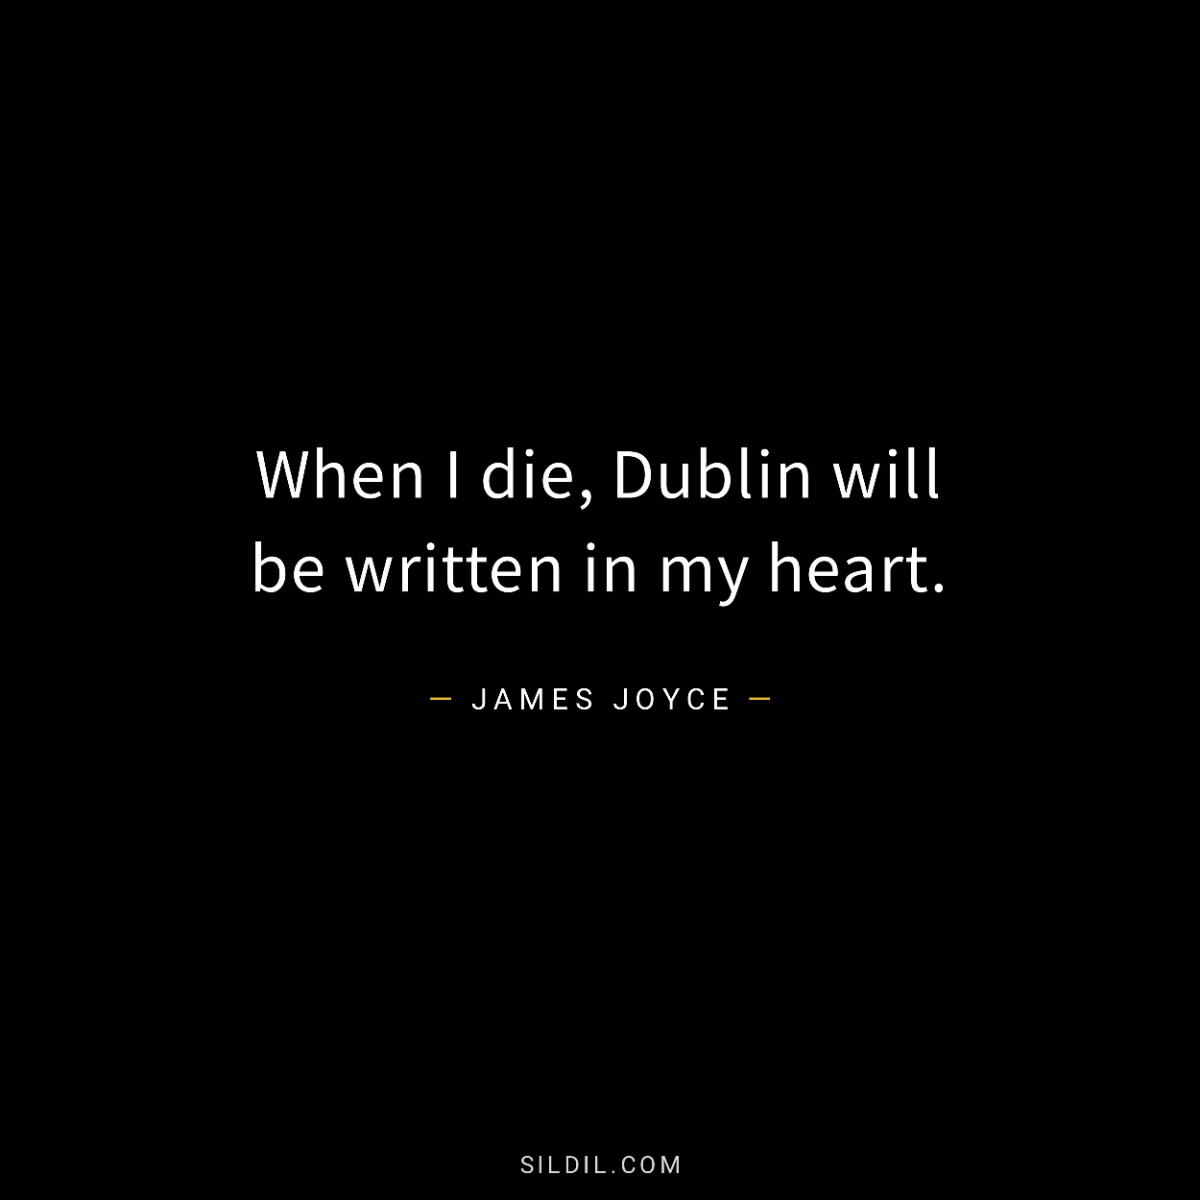 When I die, Dublin will be written in my heart.